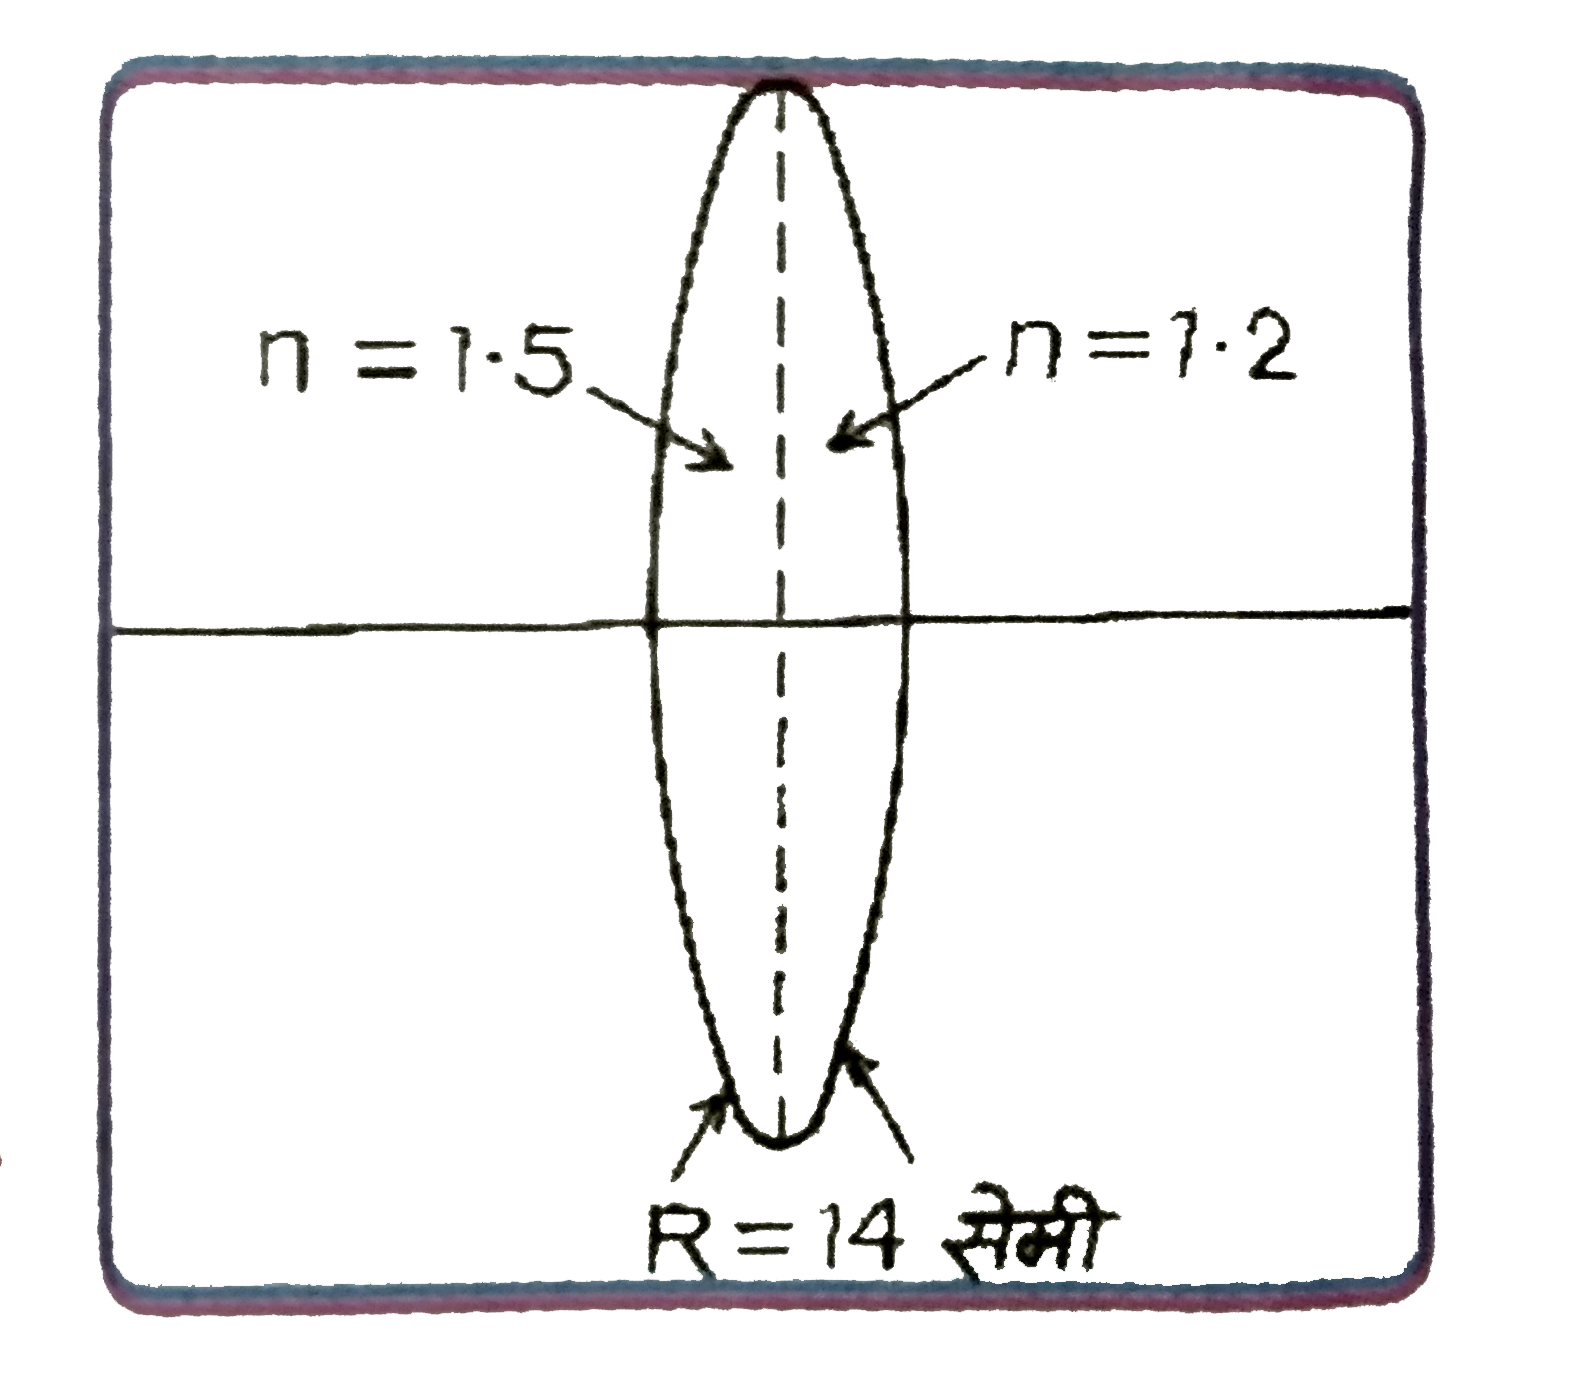 चित्र में दर्शाये  अनुशार, दो पतले समतल-उत्तल लेन्सों को मिलाकर एक उभयोत्तल  लेन्स बना है | पहले लेन्स का अपवर्तनांक (n) 1.5  तथा दूसरे का 1.2 है | दोनों लेन्सों के गोलीय फलको  की वक्रता-त्रिज्या  R = 14 सेमी है | उभयोत्तल लेन्स के लिये यदि वस्तु  की दूरी 40 सेमी हो, तब प्रतिबिम्ब  की दूरी होगी :